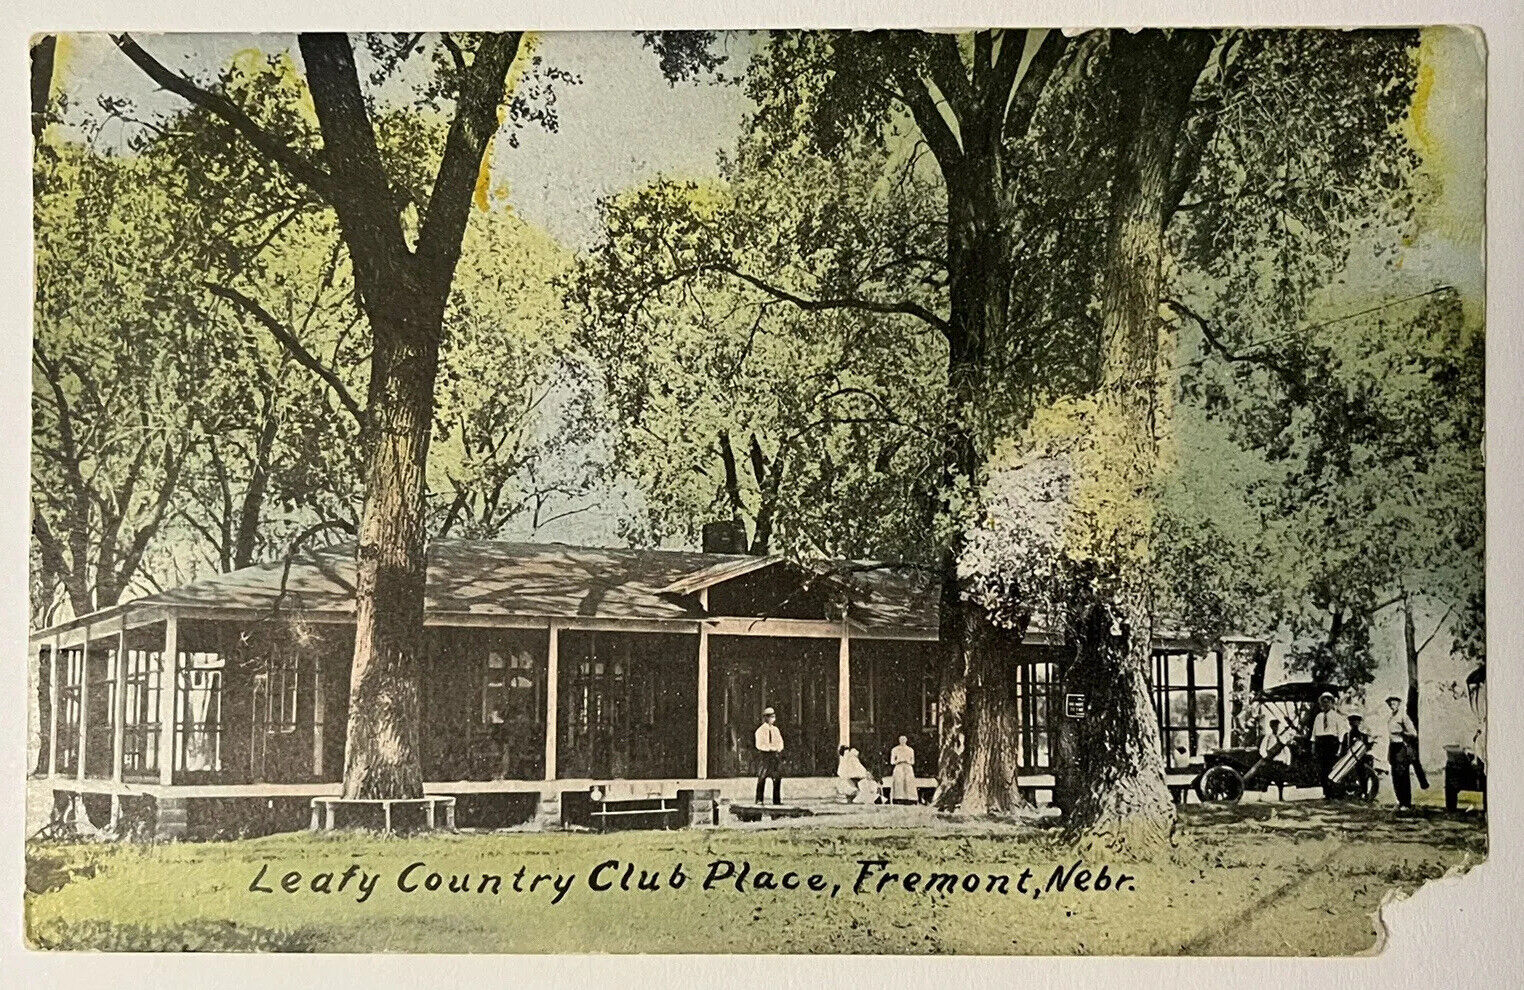 Fremont Nebraska Leaf Country Club People Old Car Antique Postcard 1909